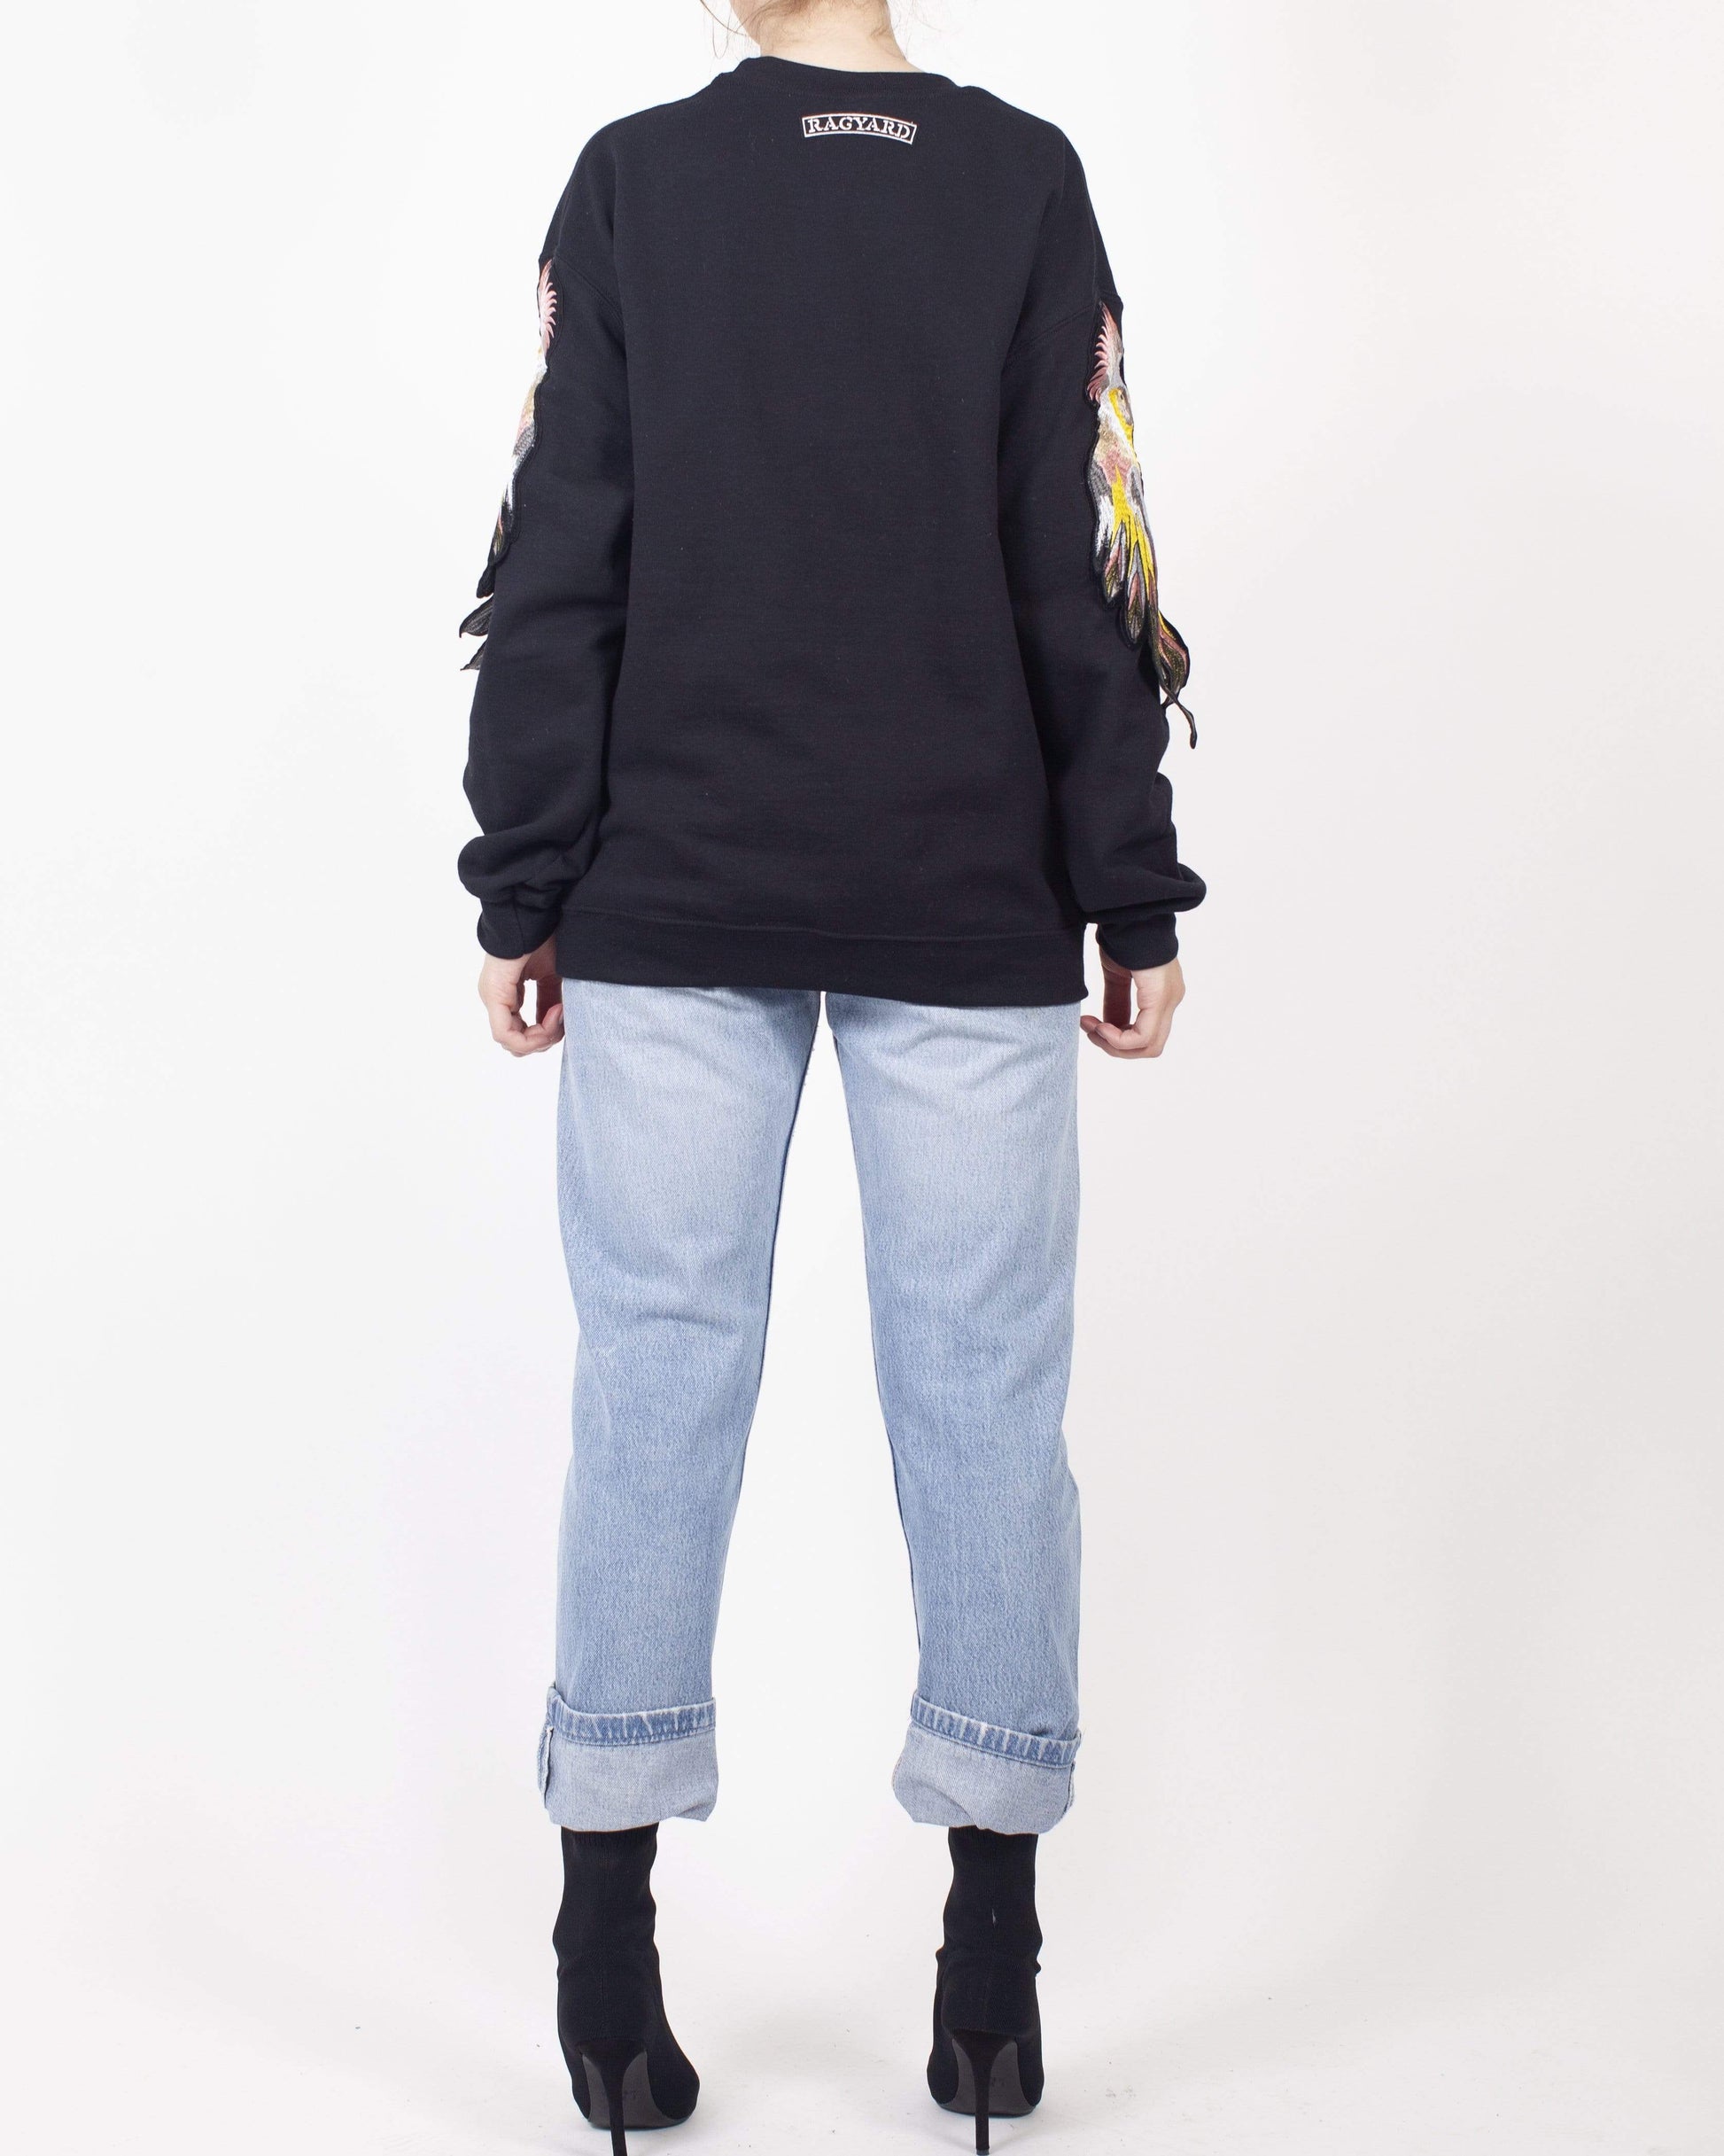 Black Parrot Sleeve Sweatshirt - Ragyard Vintage Clothing